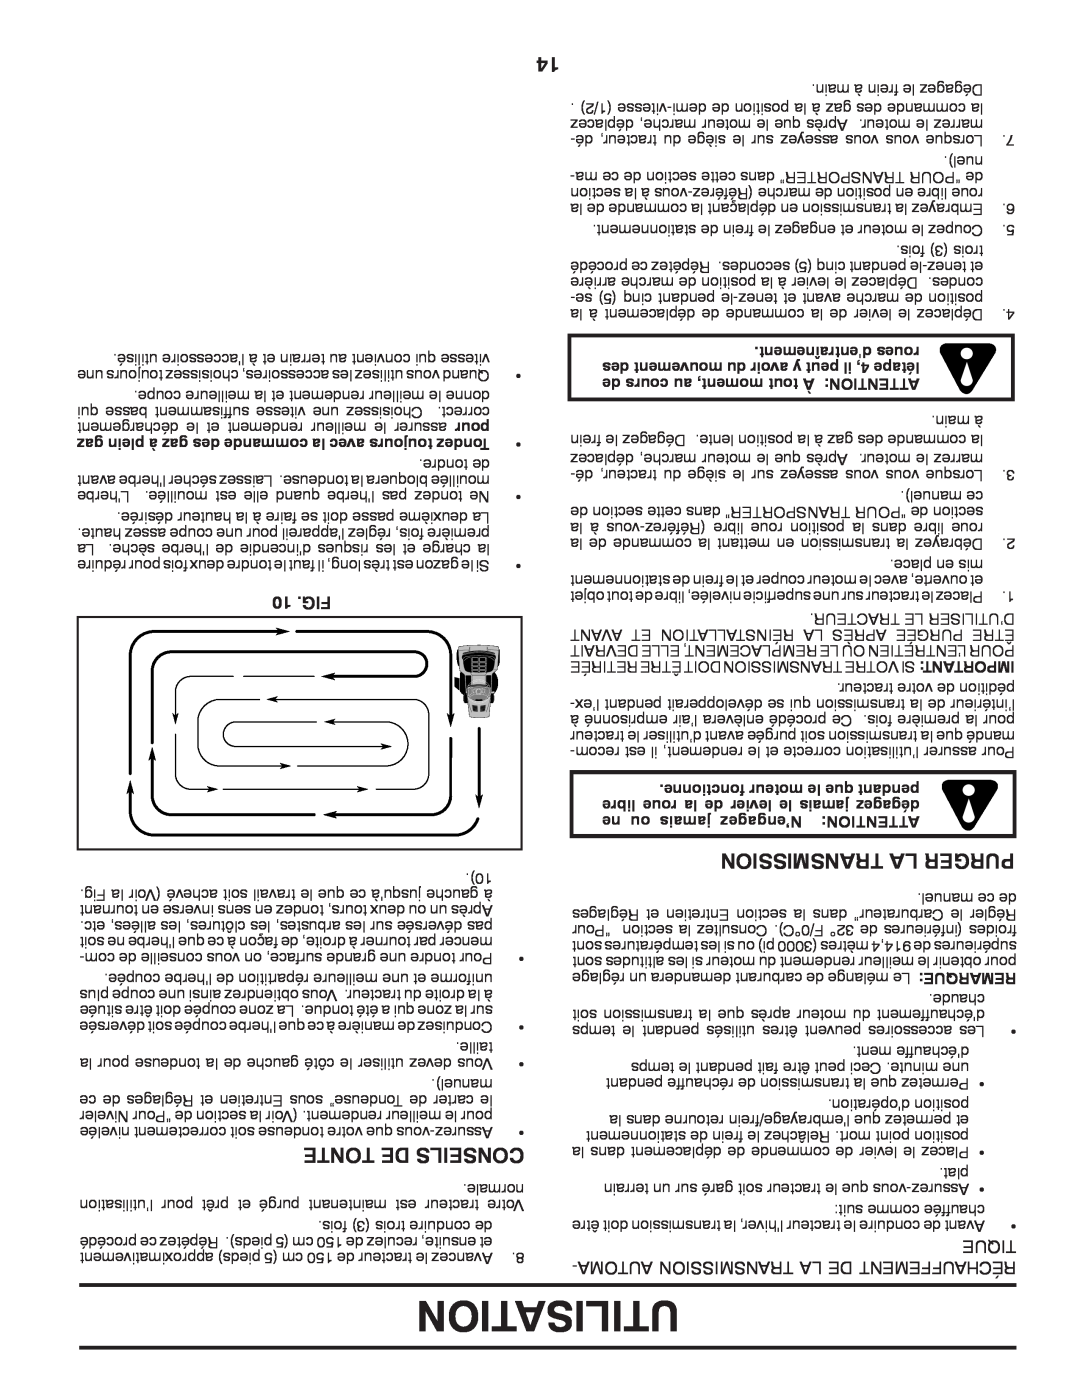 Poulan 411287 manual Utilisation, Transmission La Purger, Tonte De Conseils, dentraînement roues 